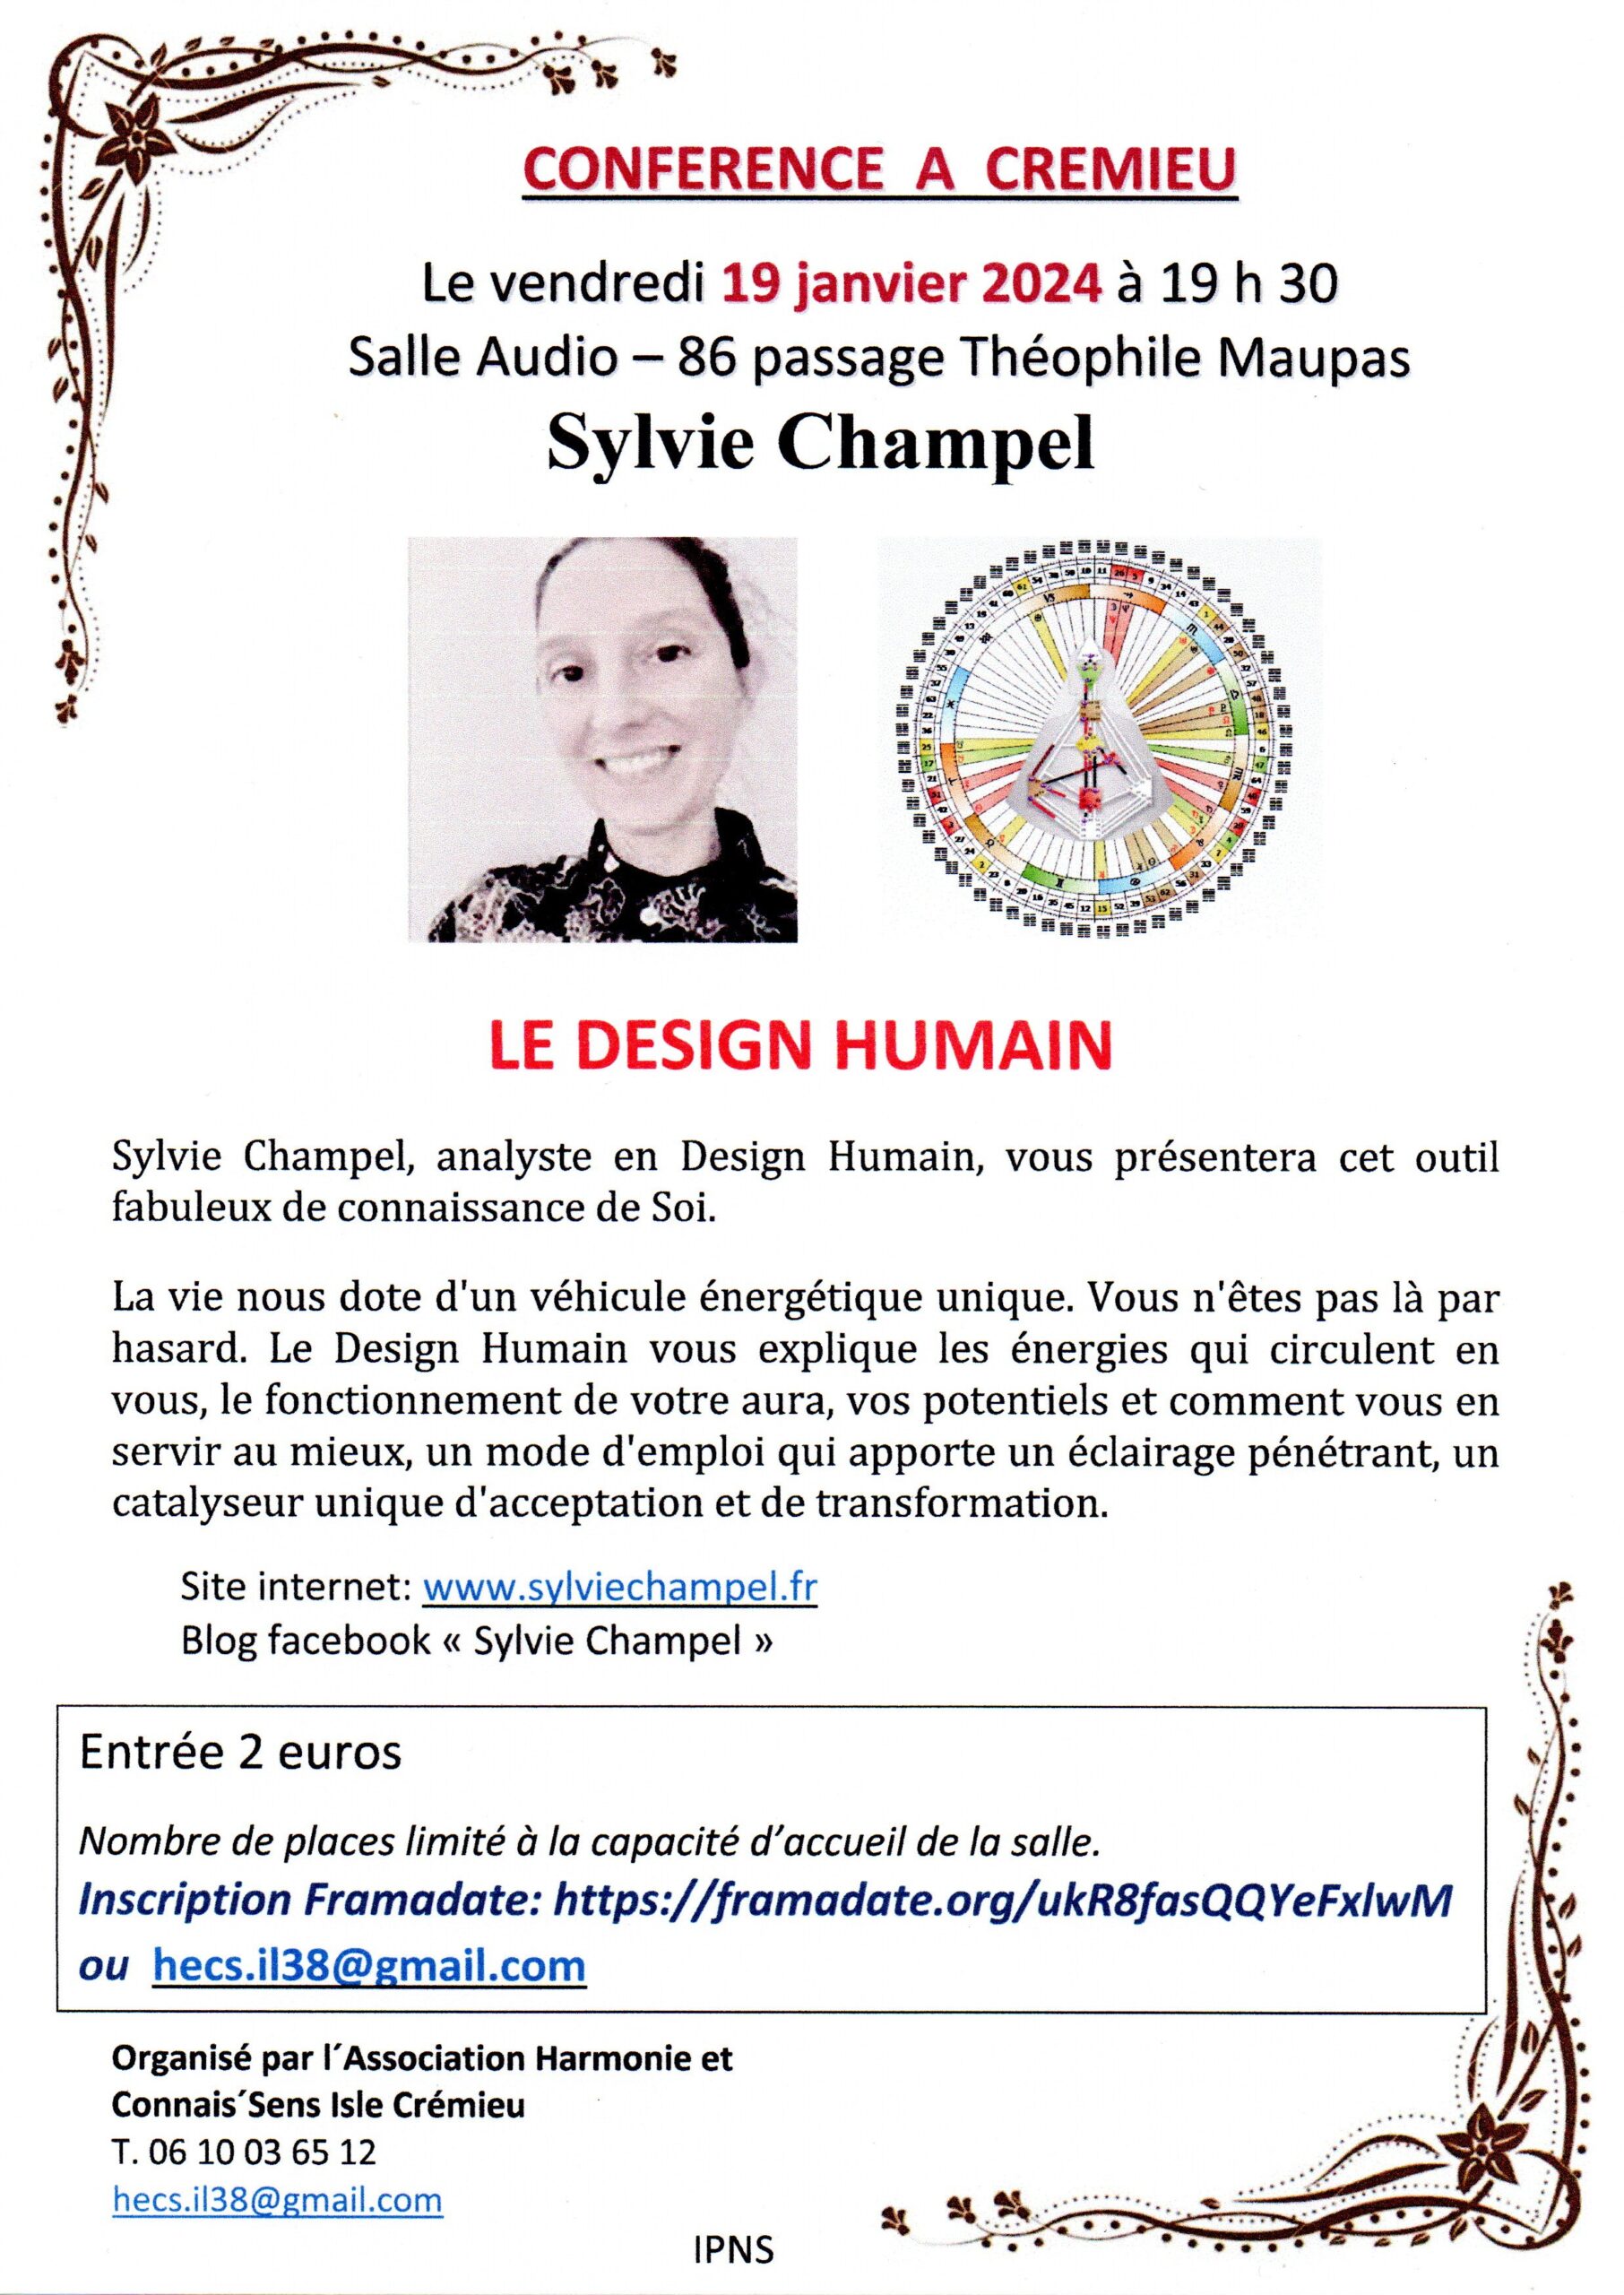 Conférence sur le Design Humain le 19 janvier 2024 à Crémieu